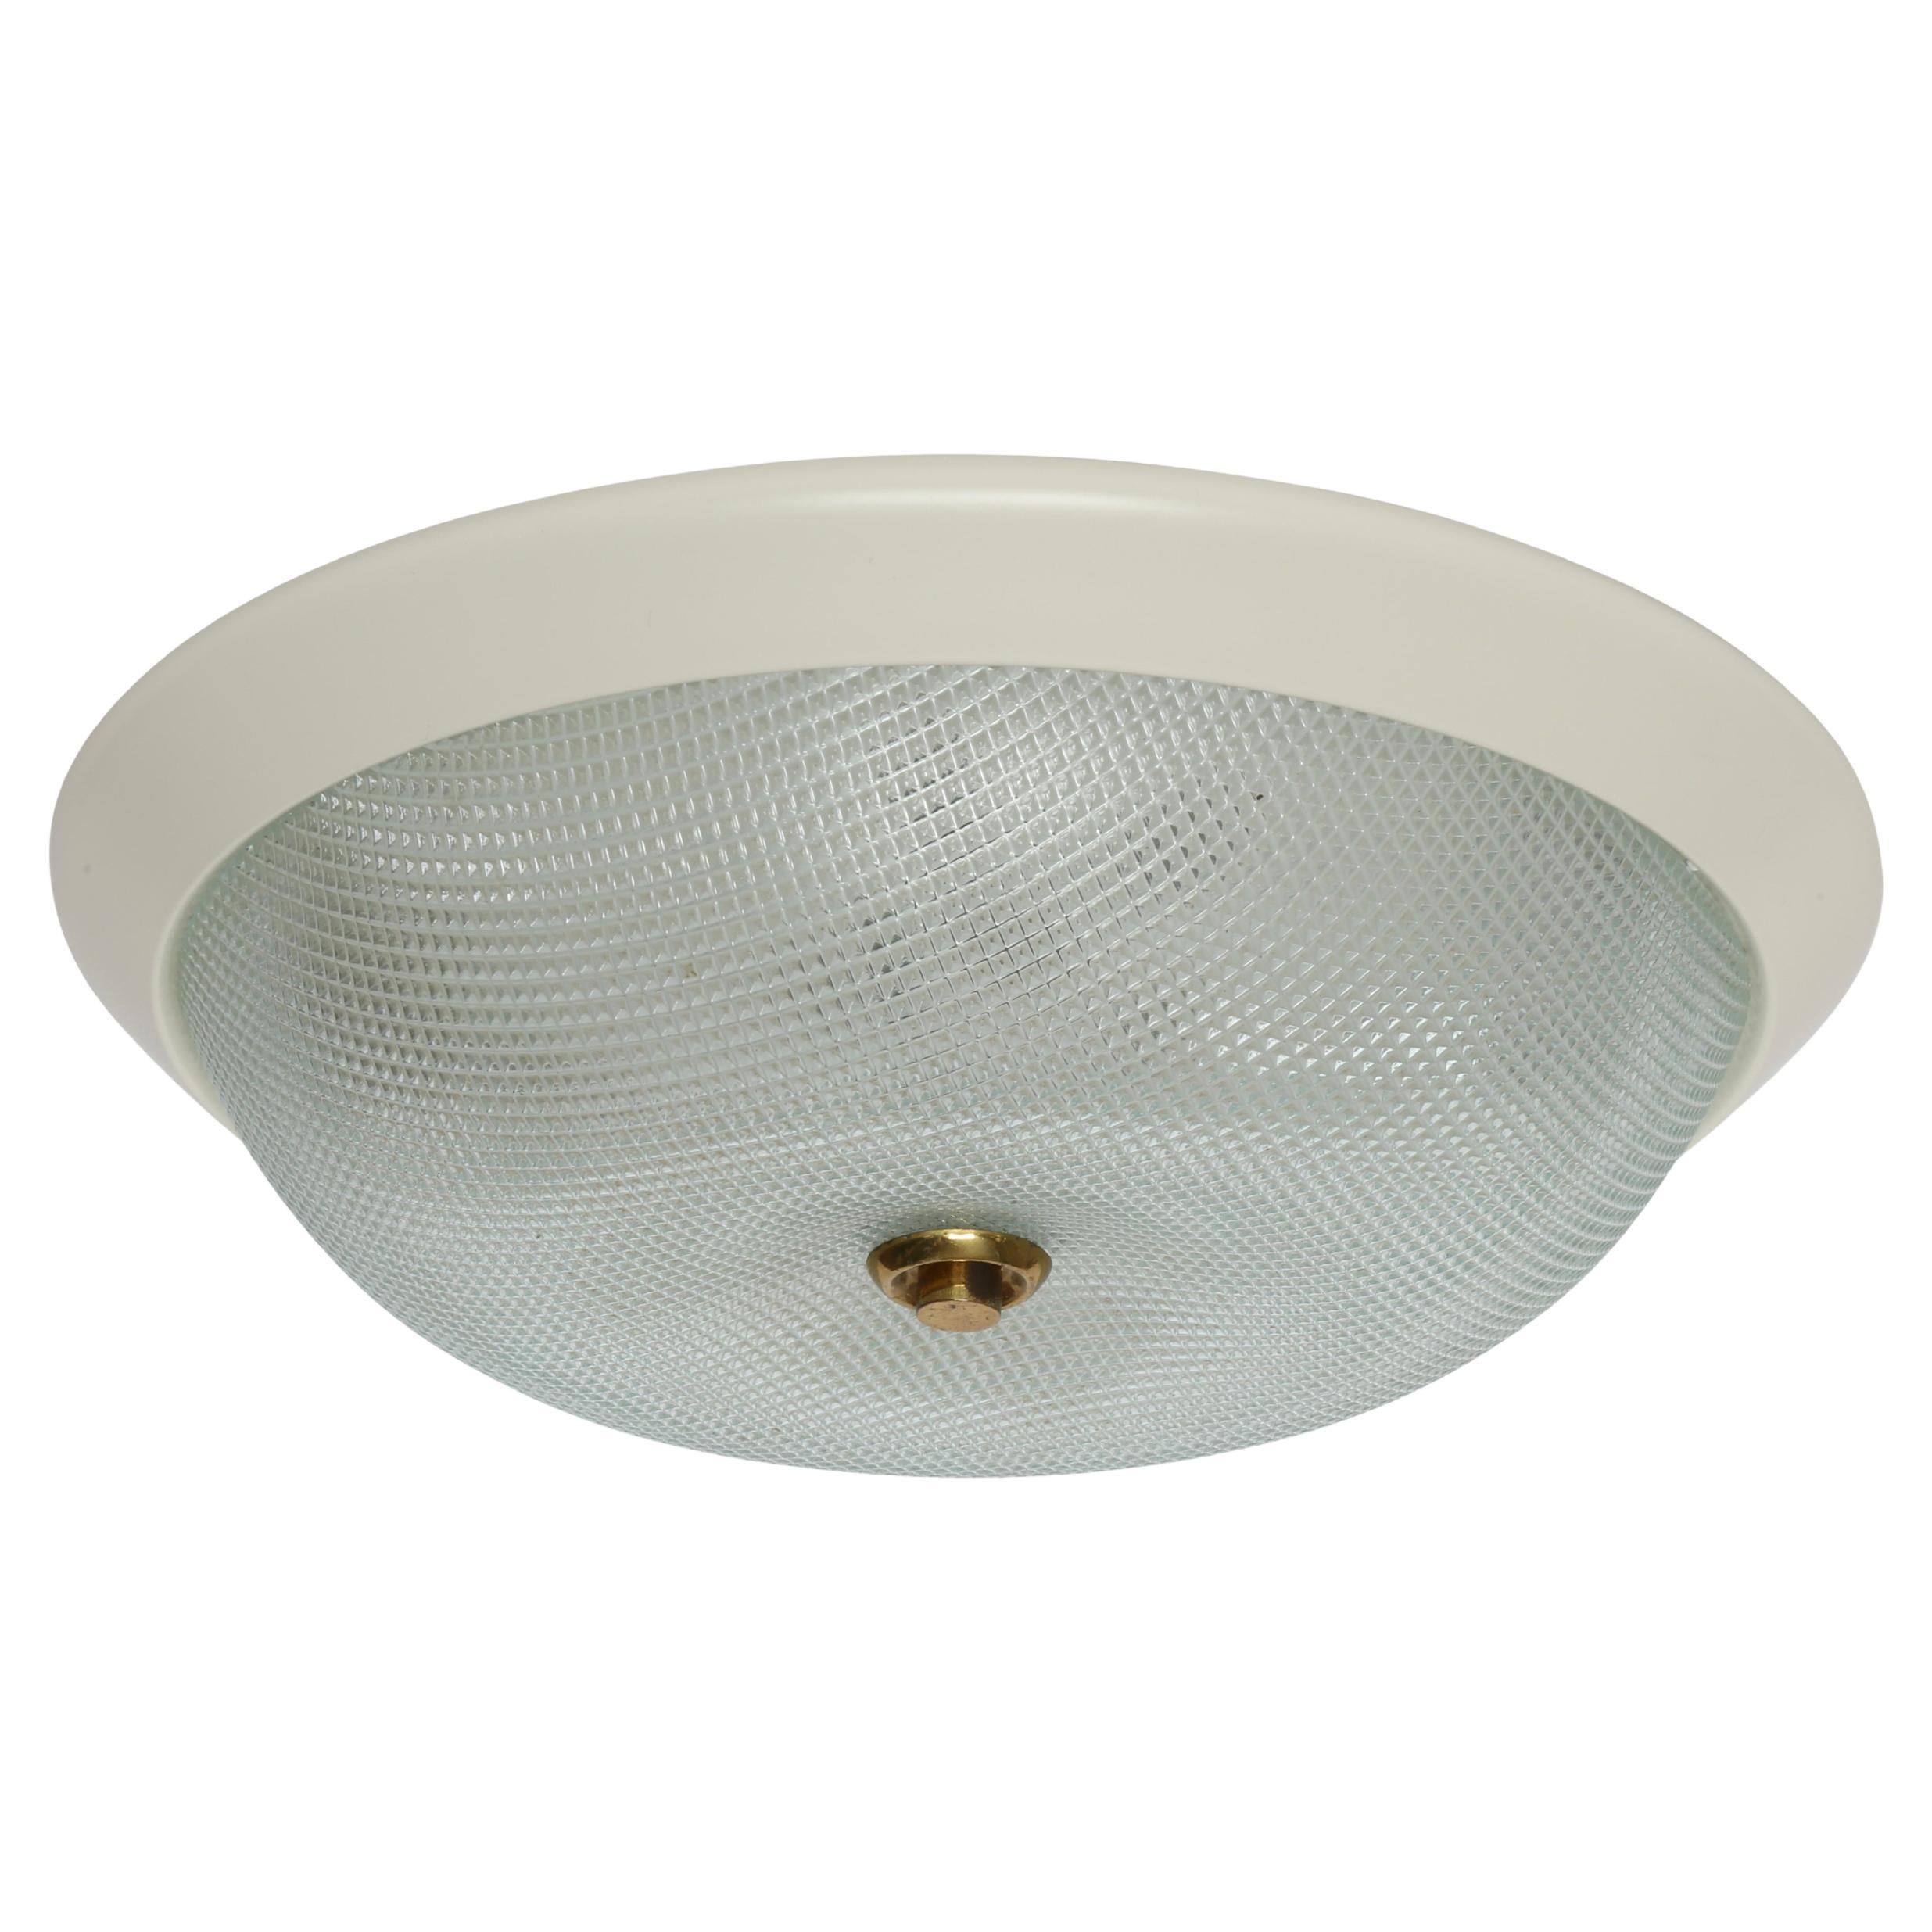 Mid century modern flush mount ceiling Light, Italy 1960s